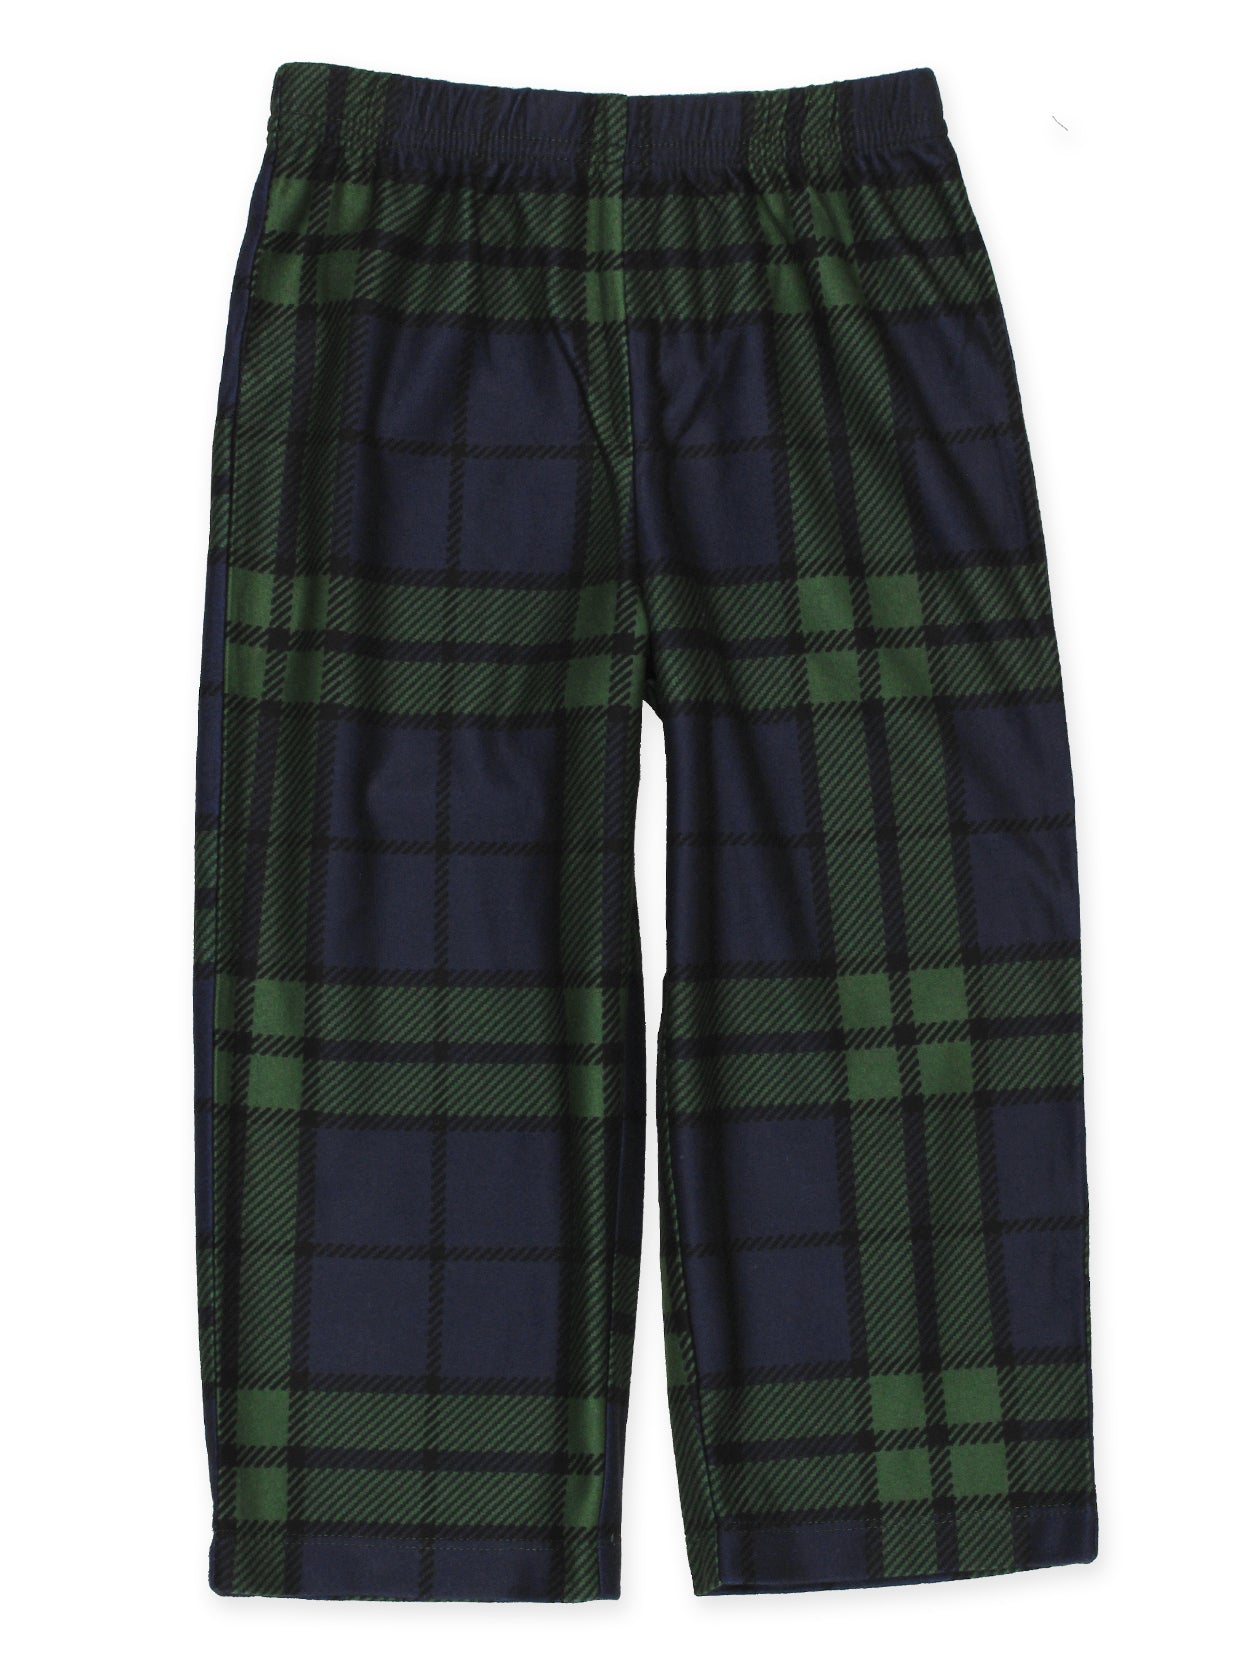 Holiday Green Plaid Coat Style Pajamas Set – Yankee Toybox